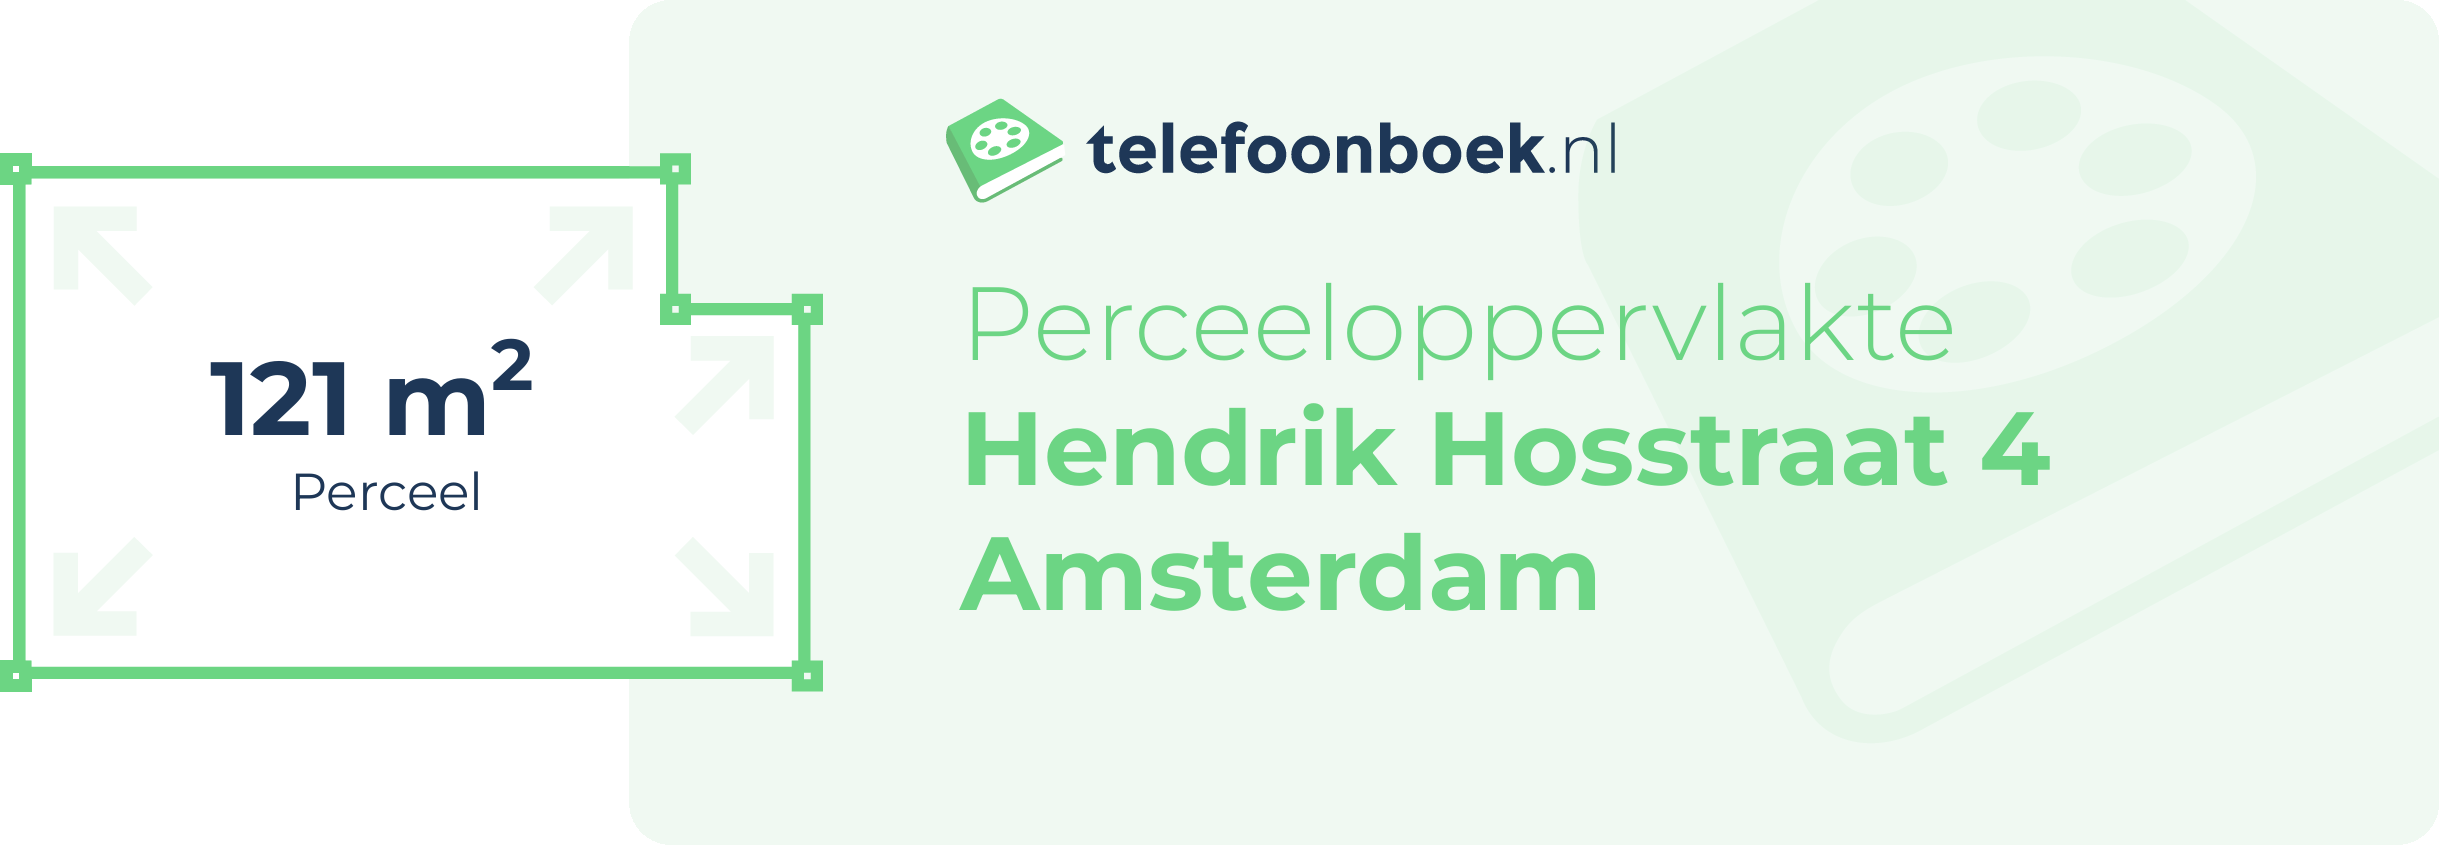 Perceeloppervlakte Hendrik Hosstraat 4 Amsterdam